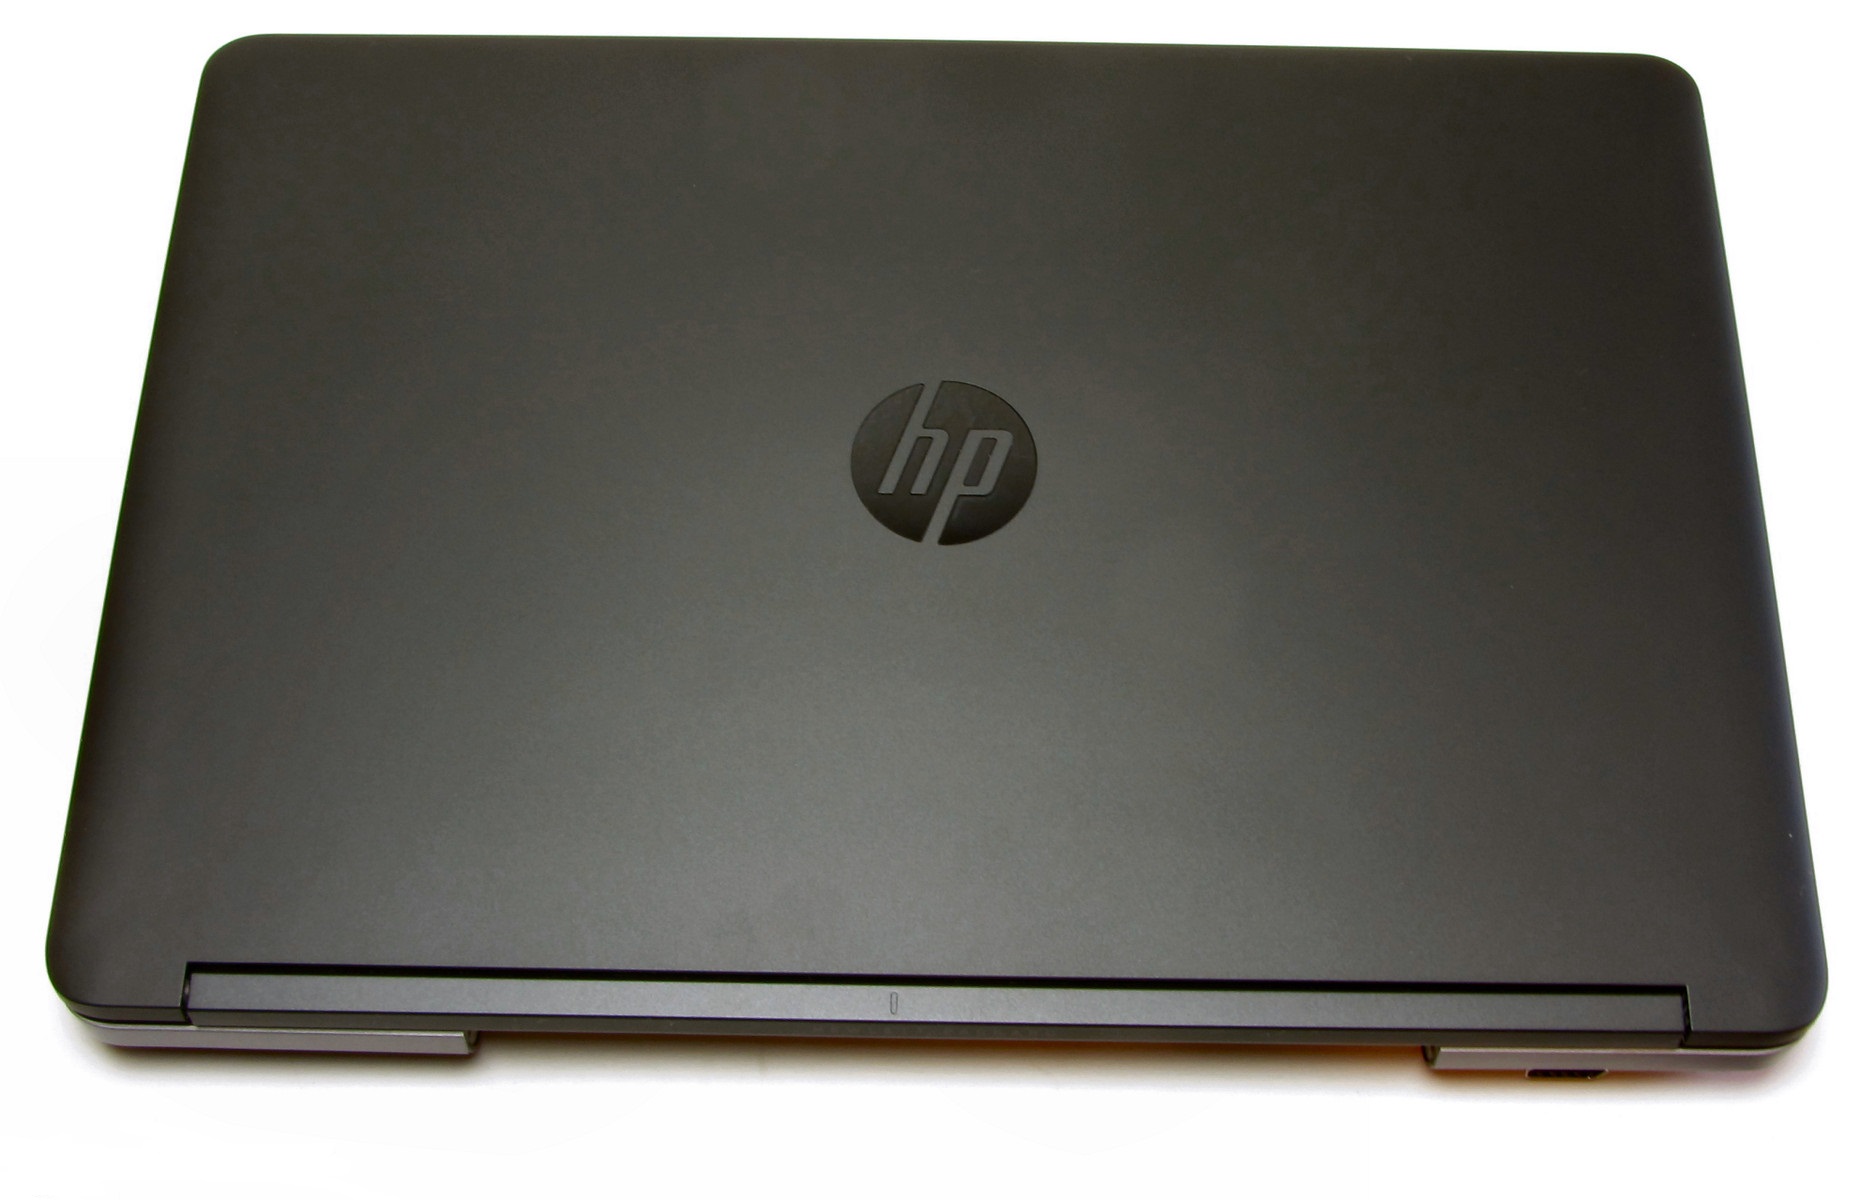 ظاهر لپ تاپ HP Probook 650 G1